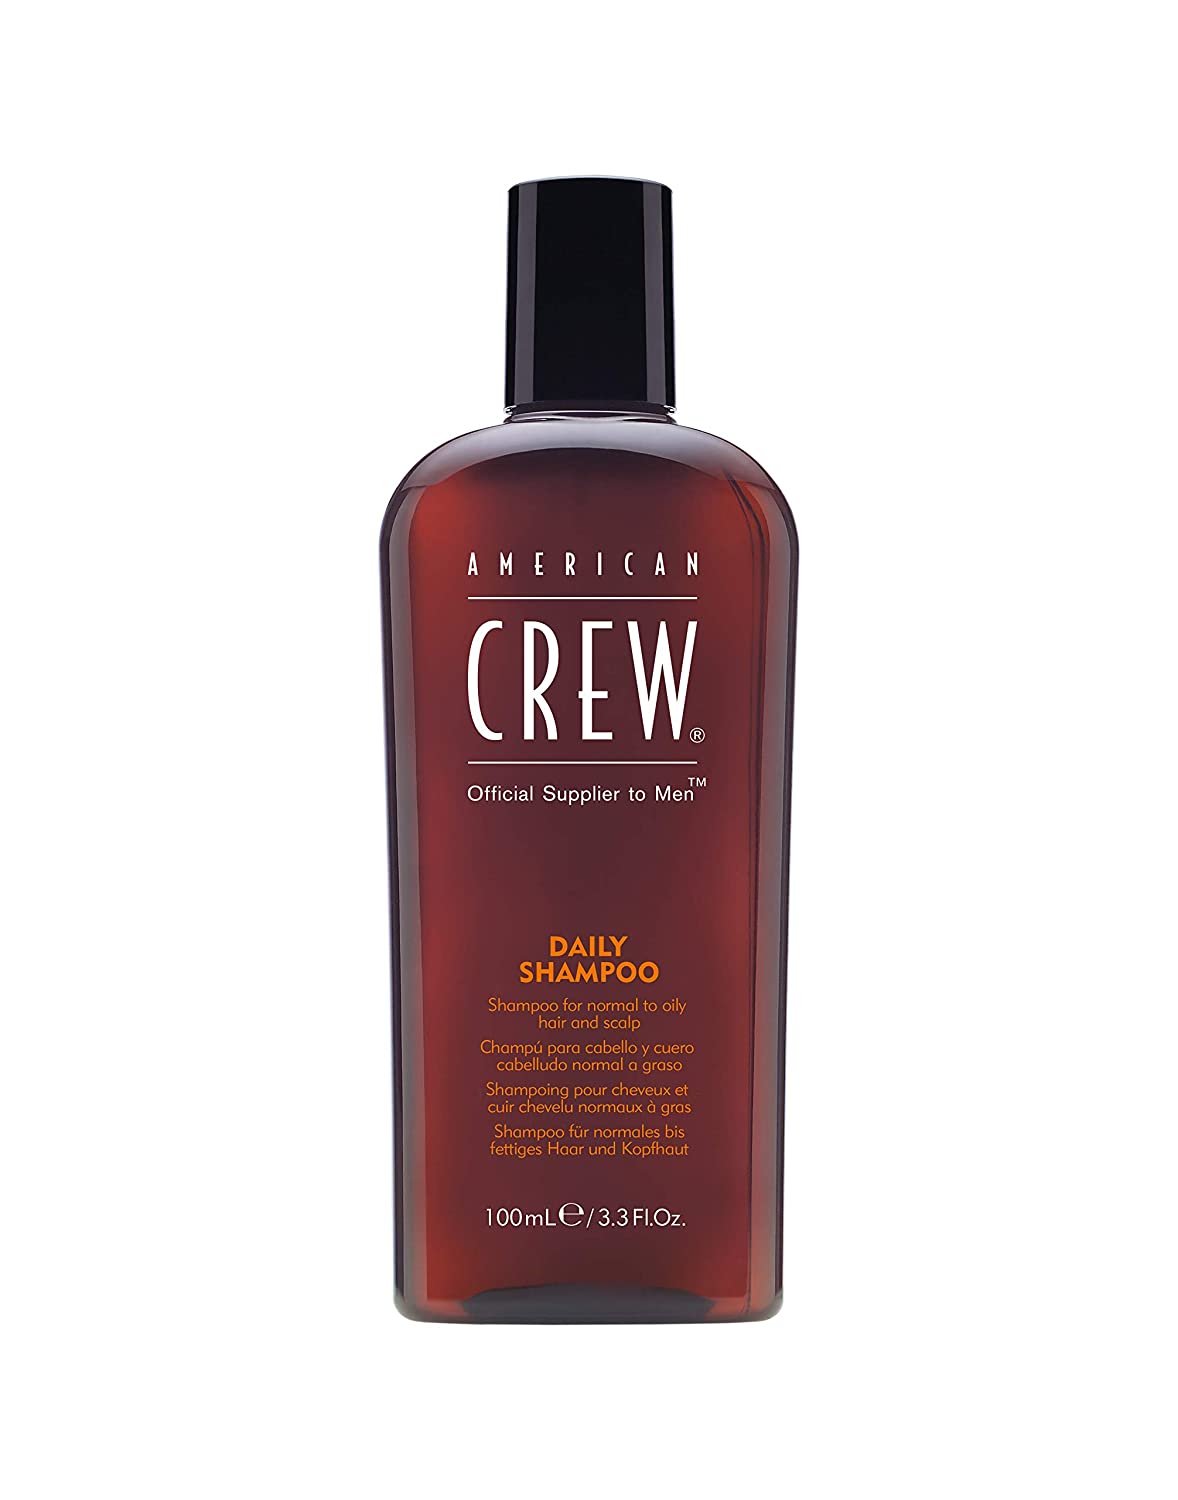 AMERICAN CREW - Daily Shampoo 3.3 fl oz